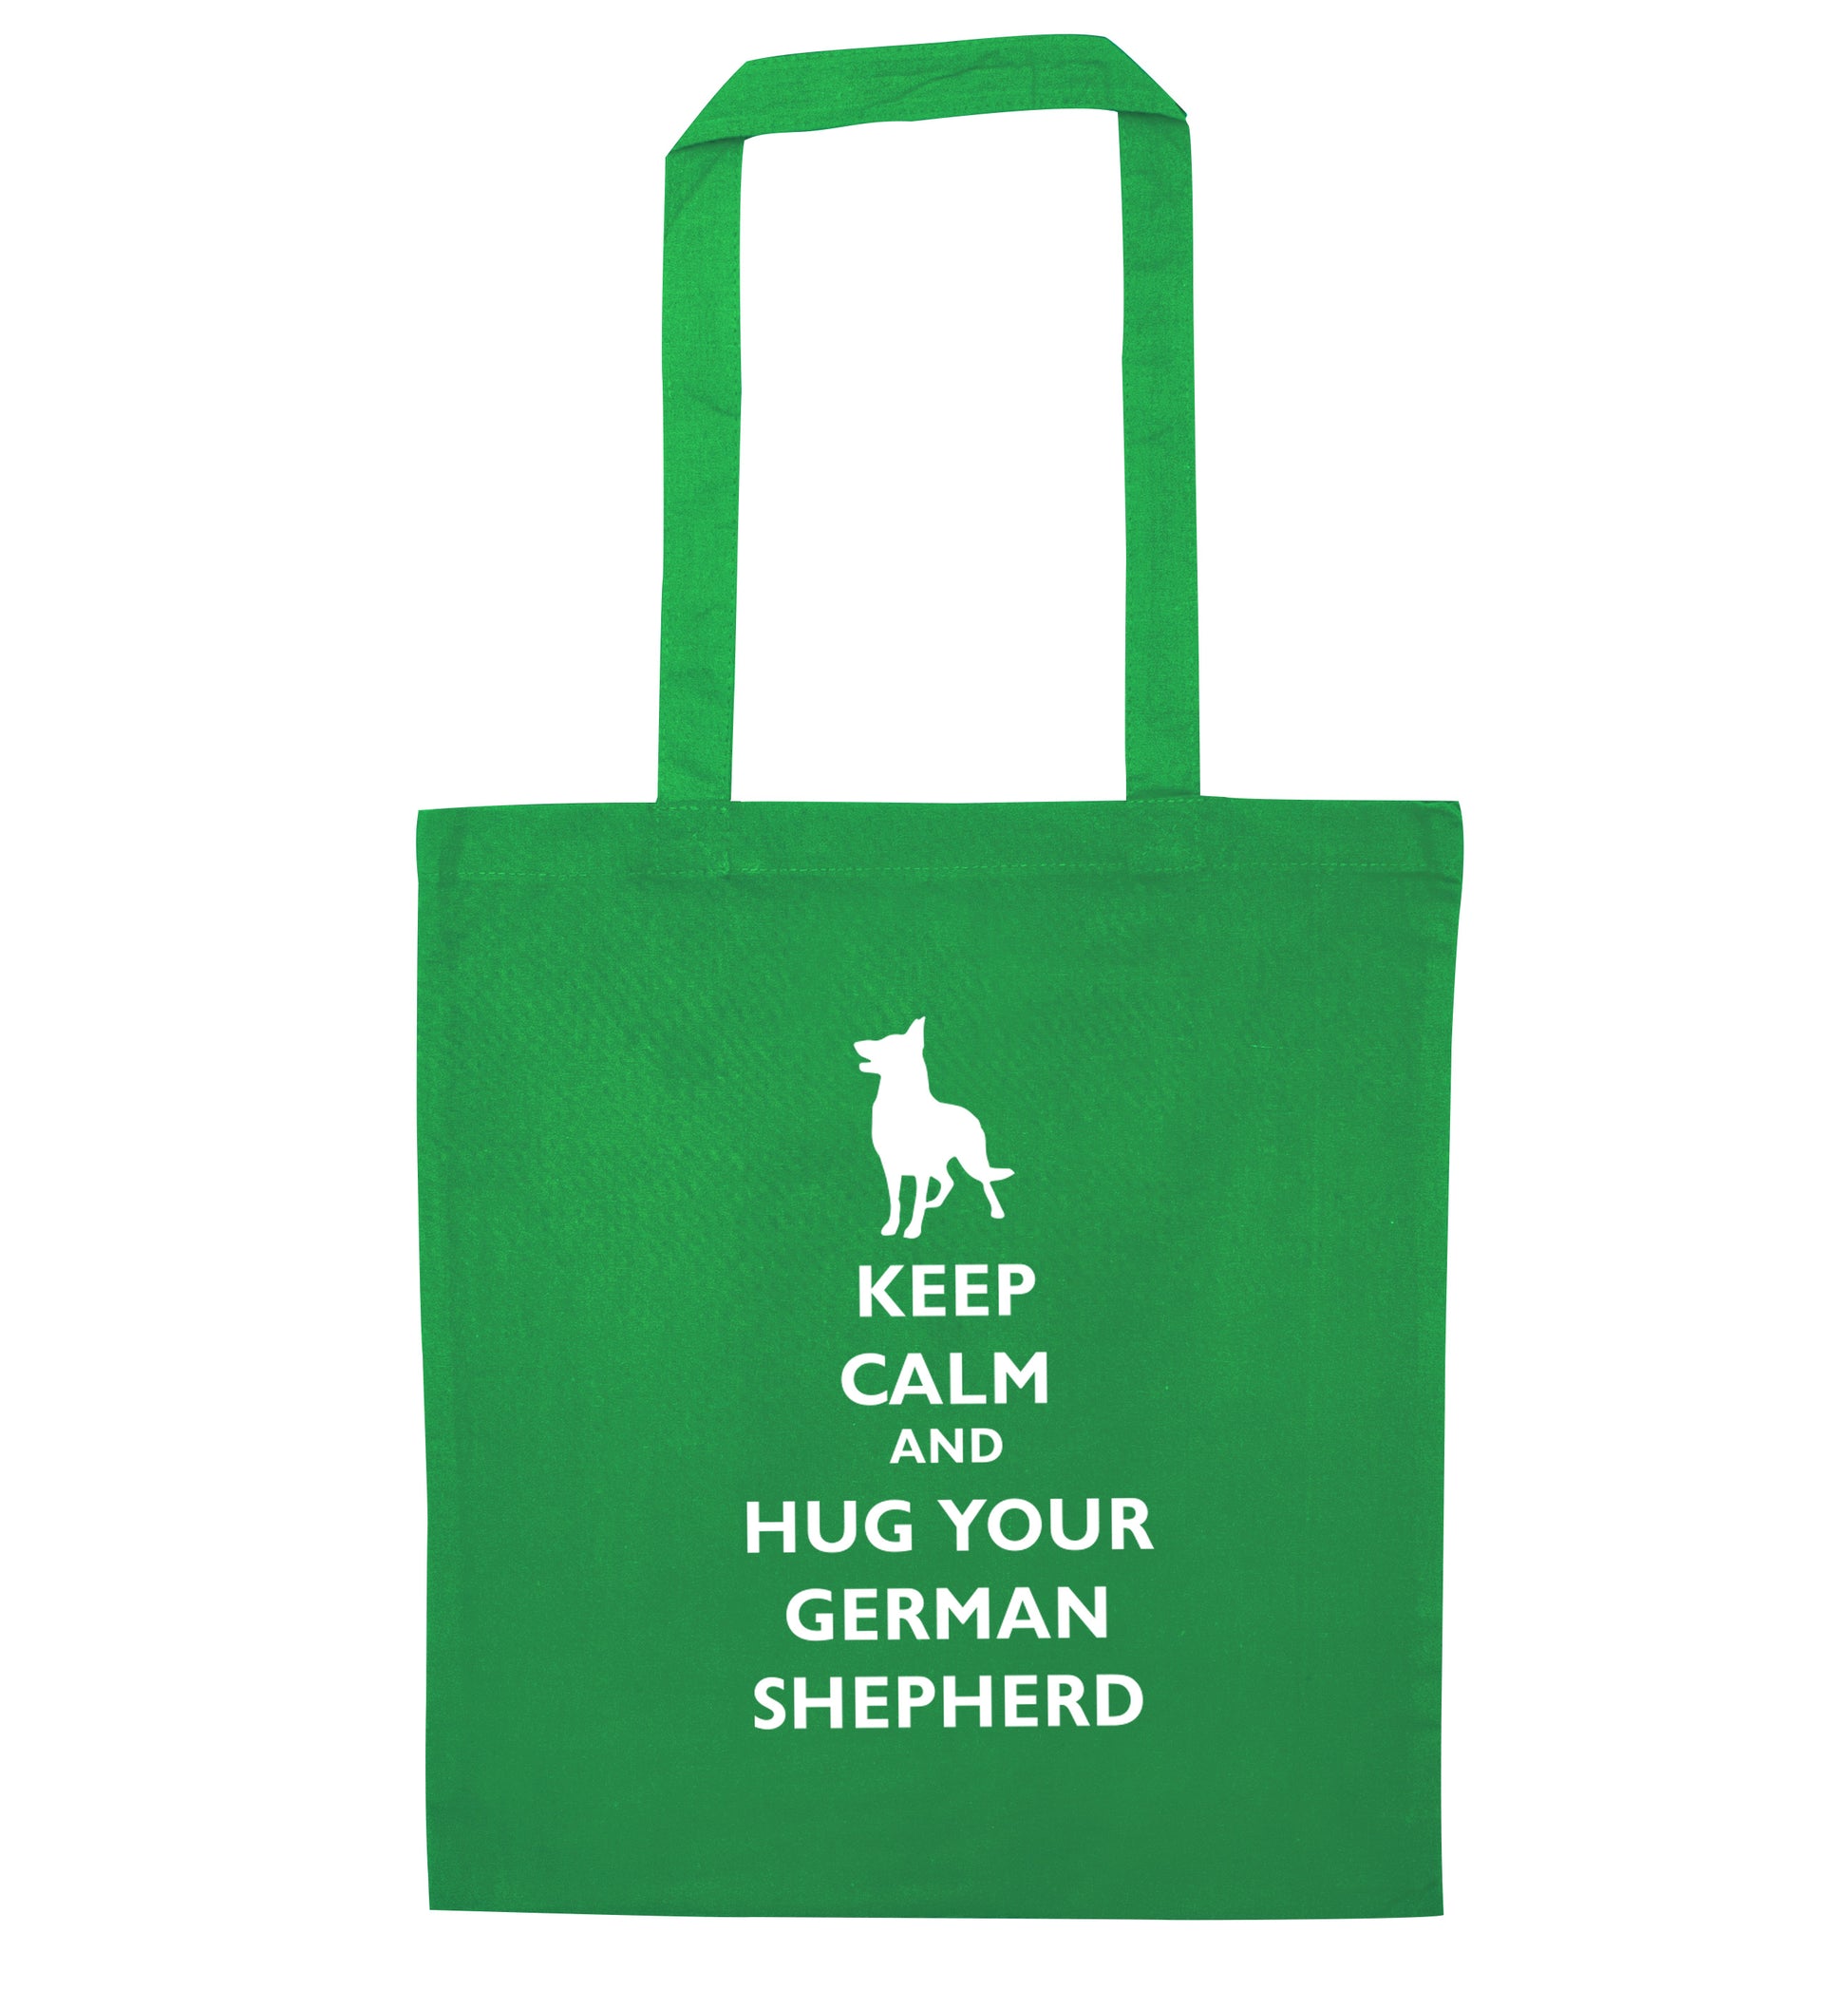 Keep calm and hug your german shepherd green tote bag